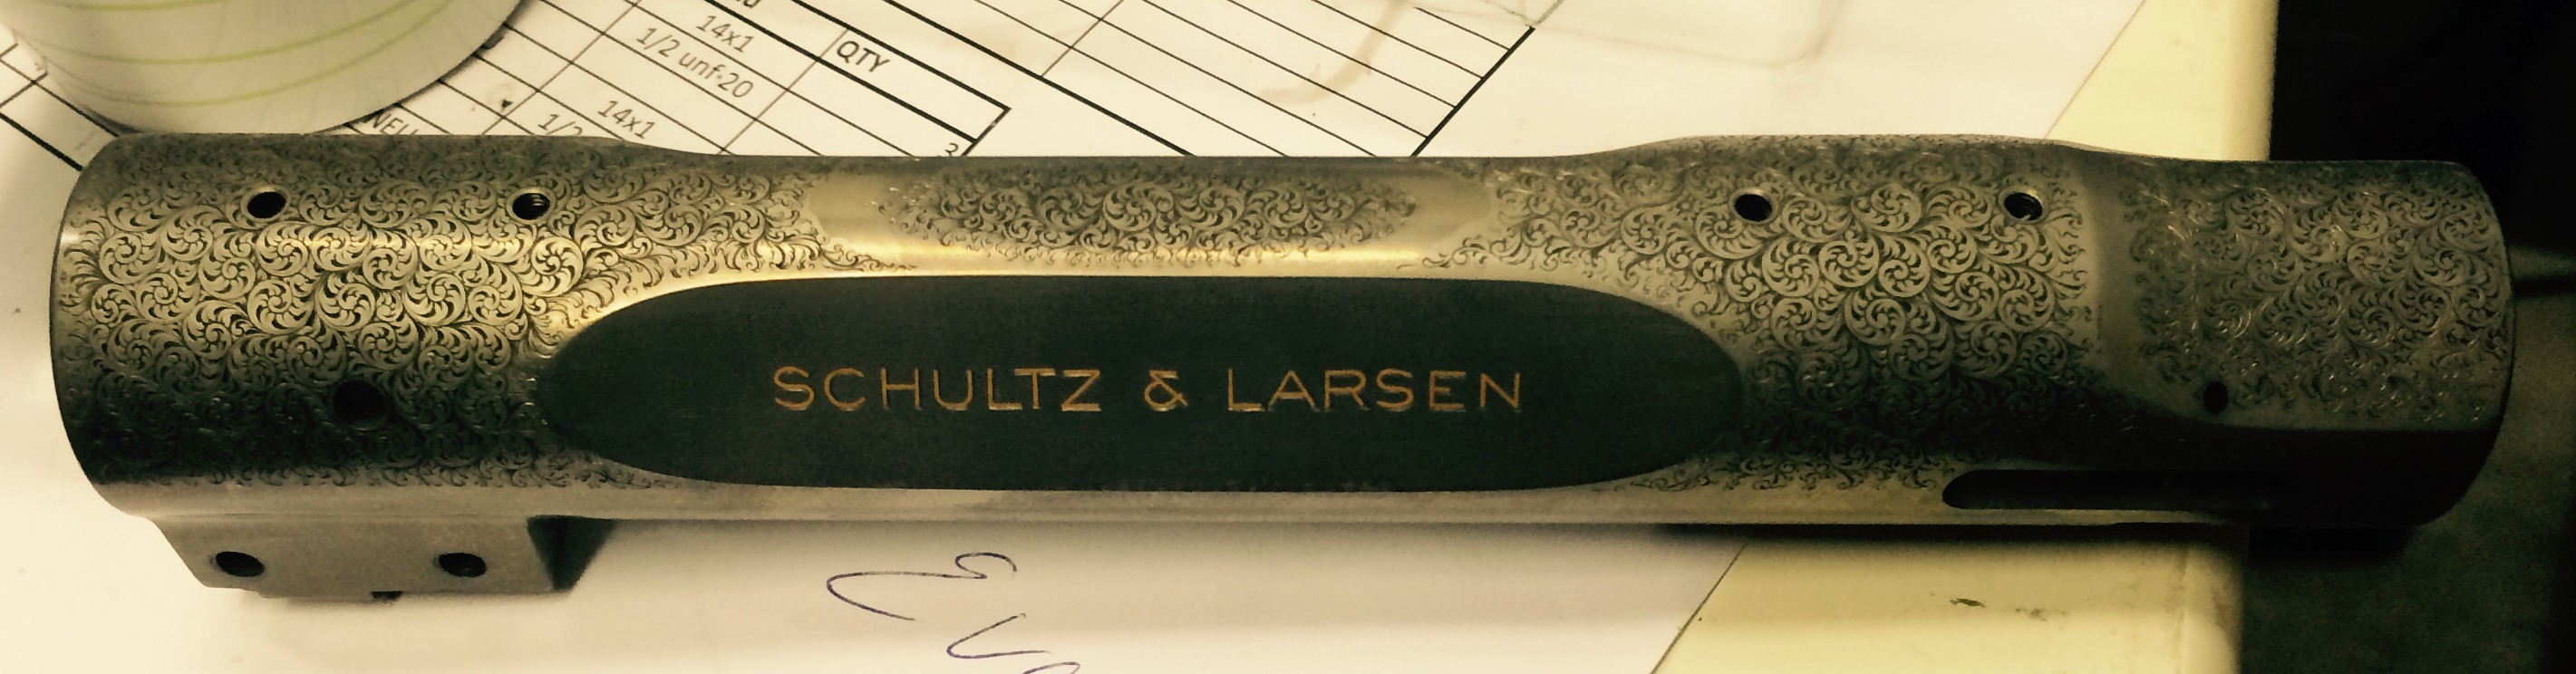 Schultz & Larsen hand engravec